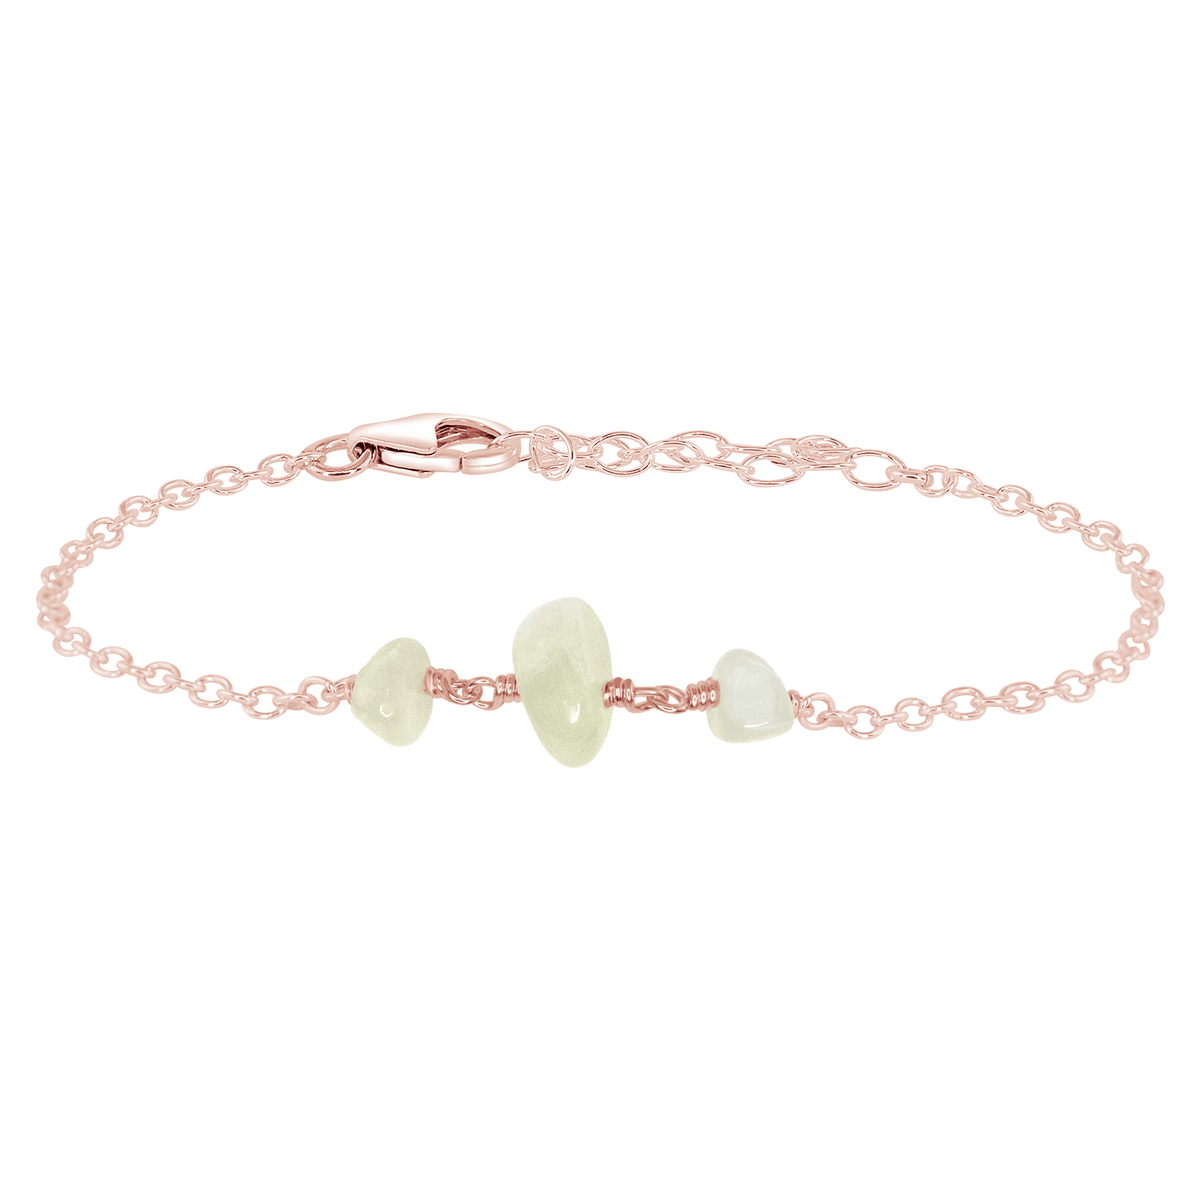 Beaded Chain Bracelet - White Moonstone - 14K Rose Gold Fill - Luna Tide Handmade Jewellery